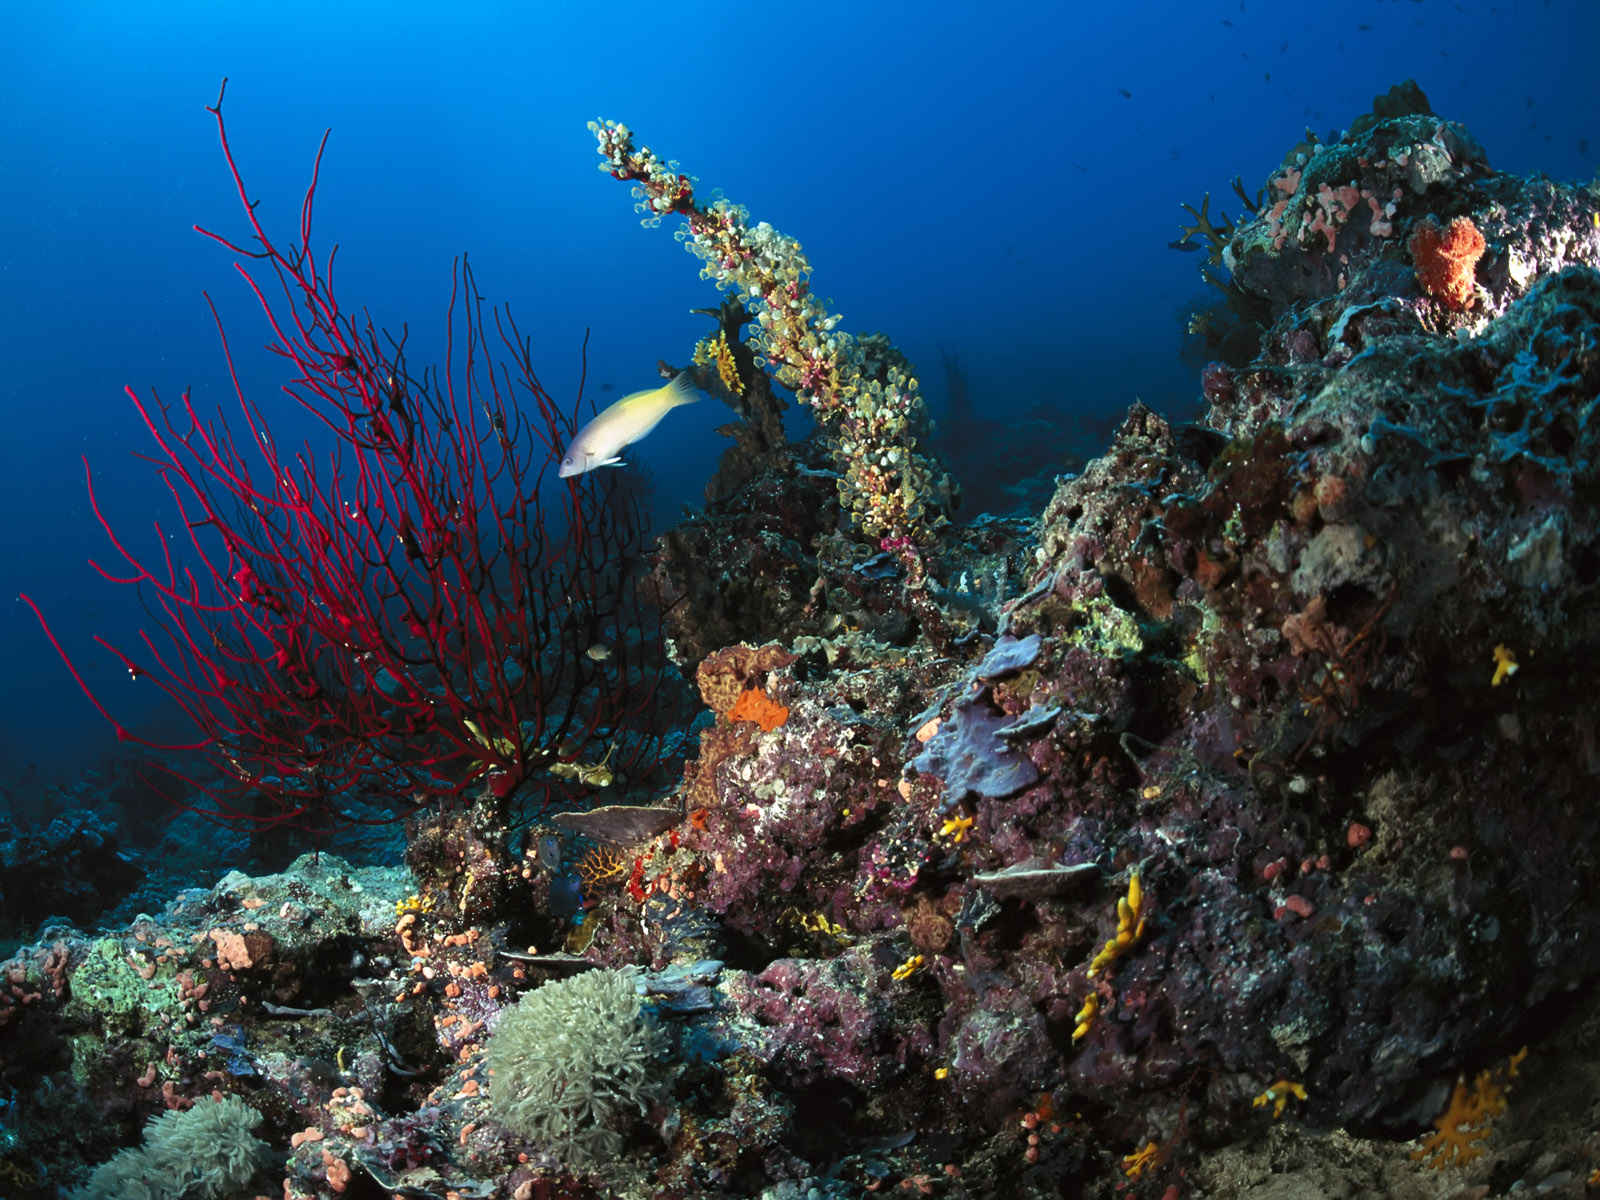 wallpaper kehidupan,reef,coral reef,underwater,marine biology,coral